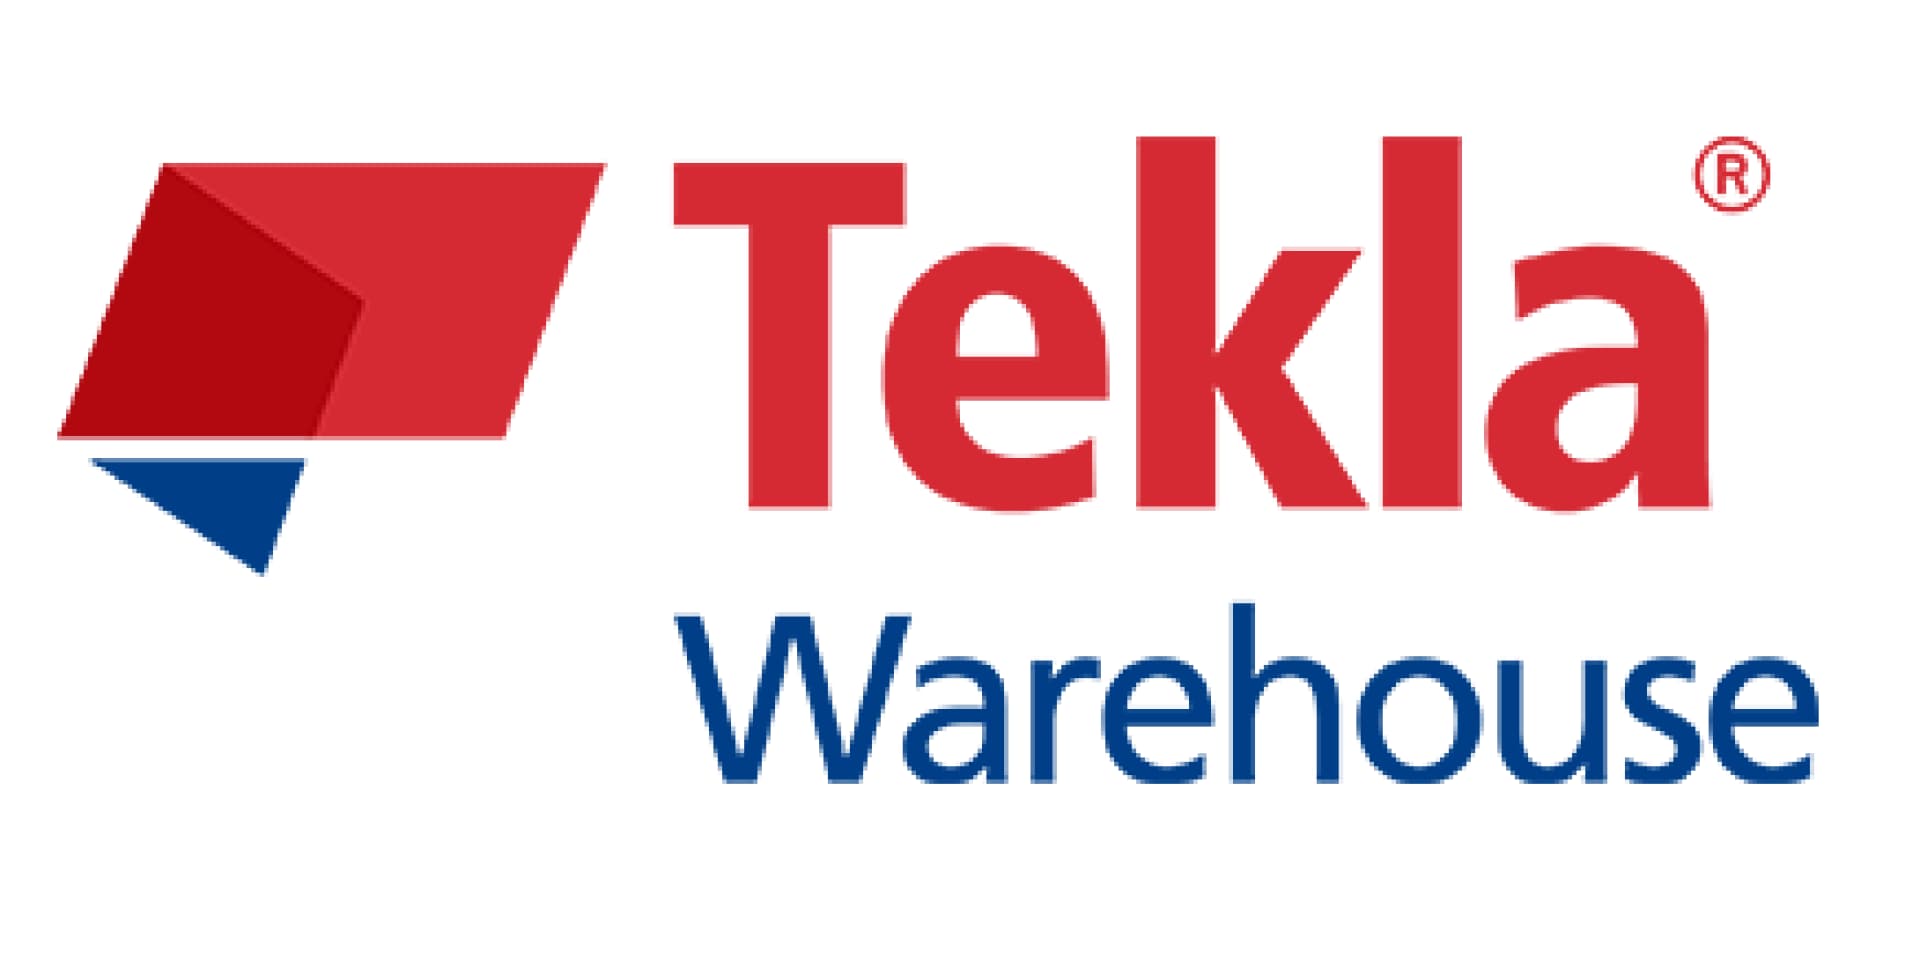 TEKLA WAREHOUSE logo